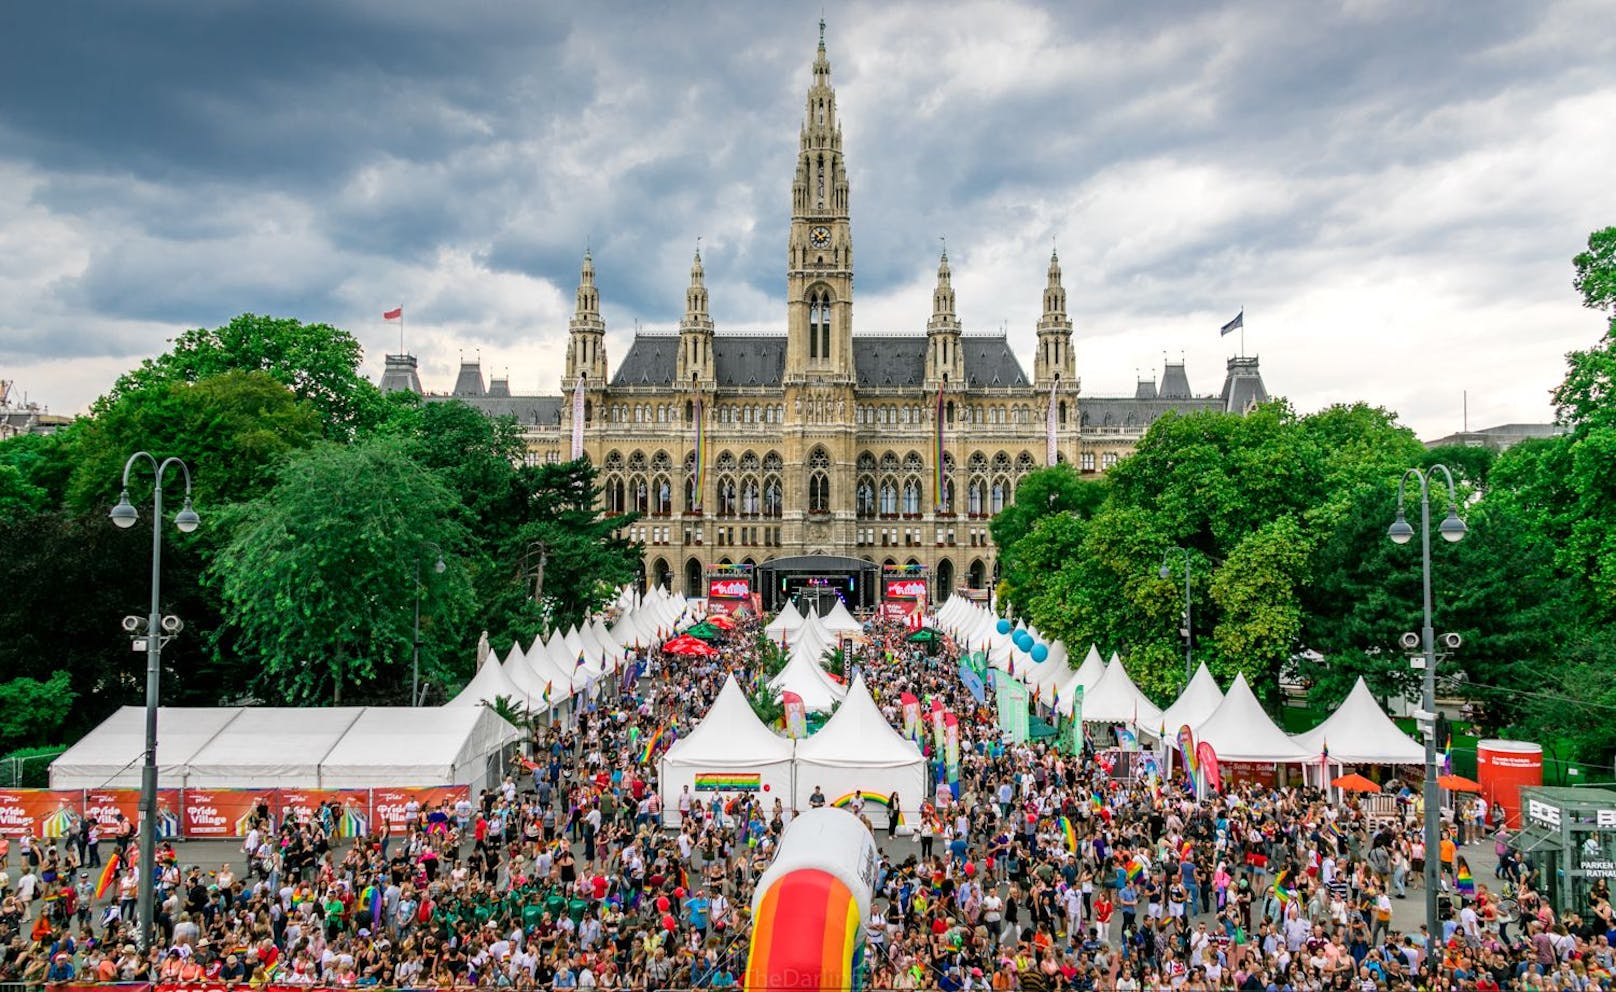 Am 17. Juni geht die Wiener Regenbogenparade über die Bühne. SOS Kinderdorf richtet in diesem Jahr eine Kinderzone für die Jüngsten ein.